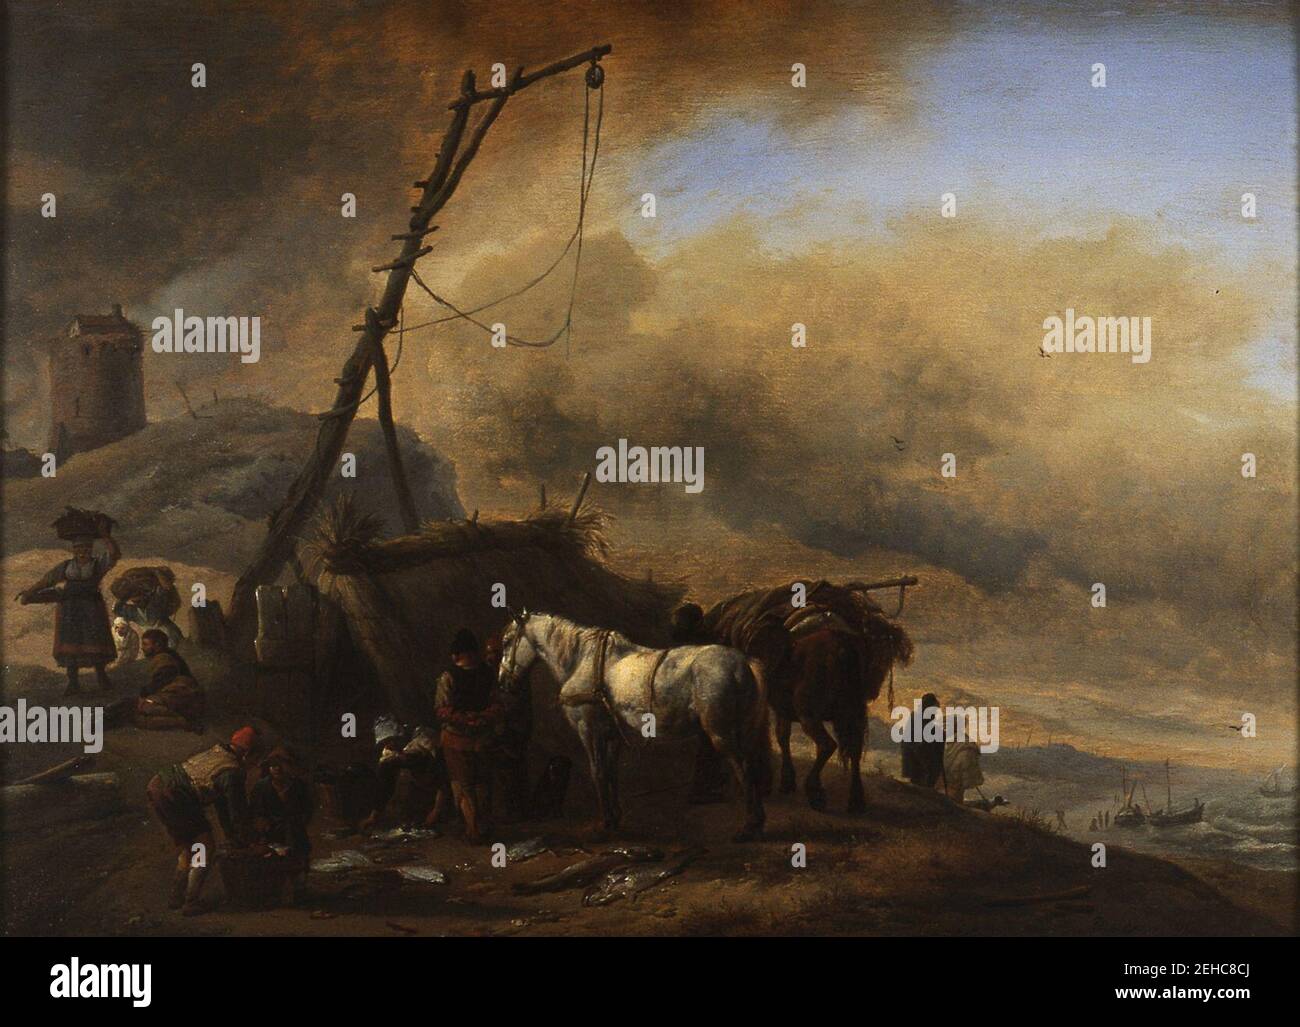 P. (1619-05-24) Wouwerman - Duinlandschap met vissers en paarden Stock Photo